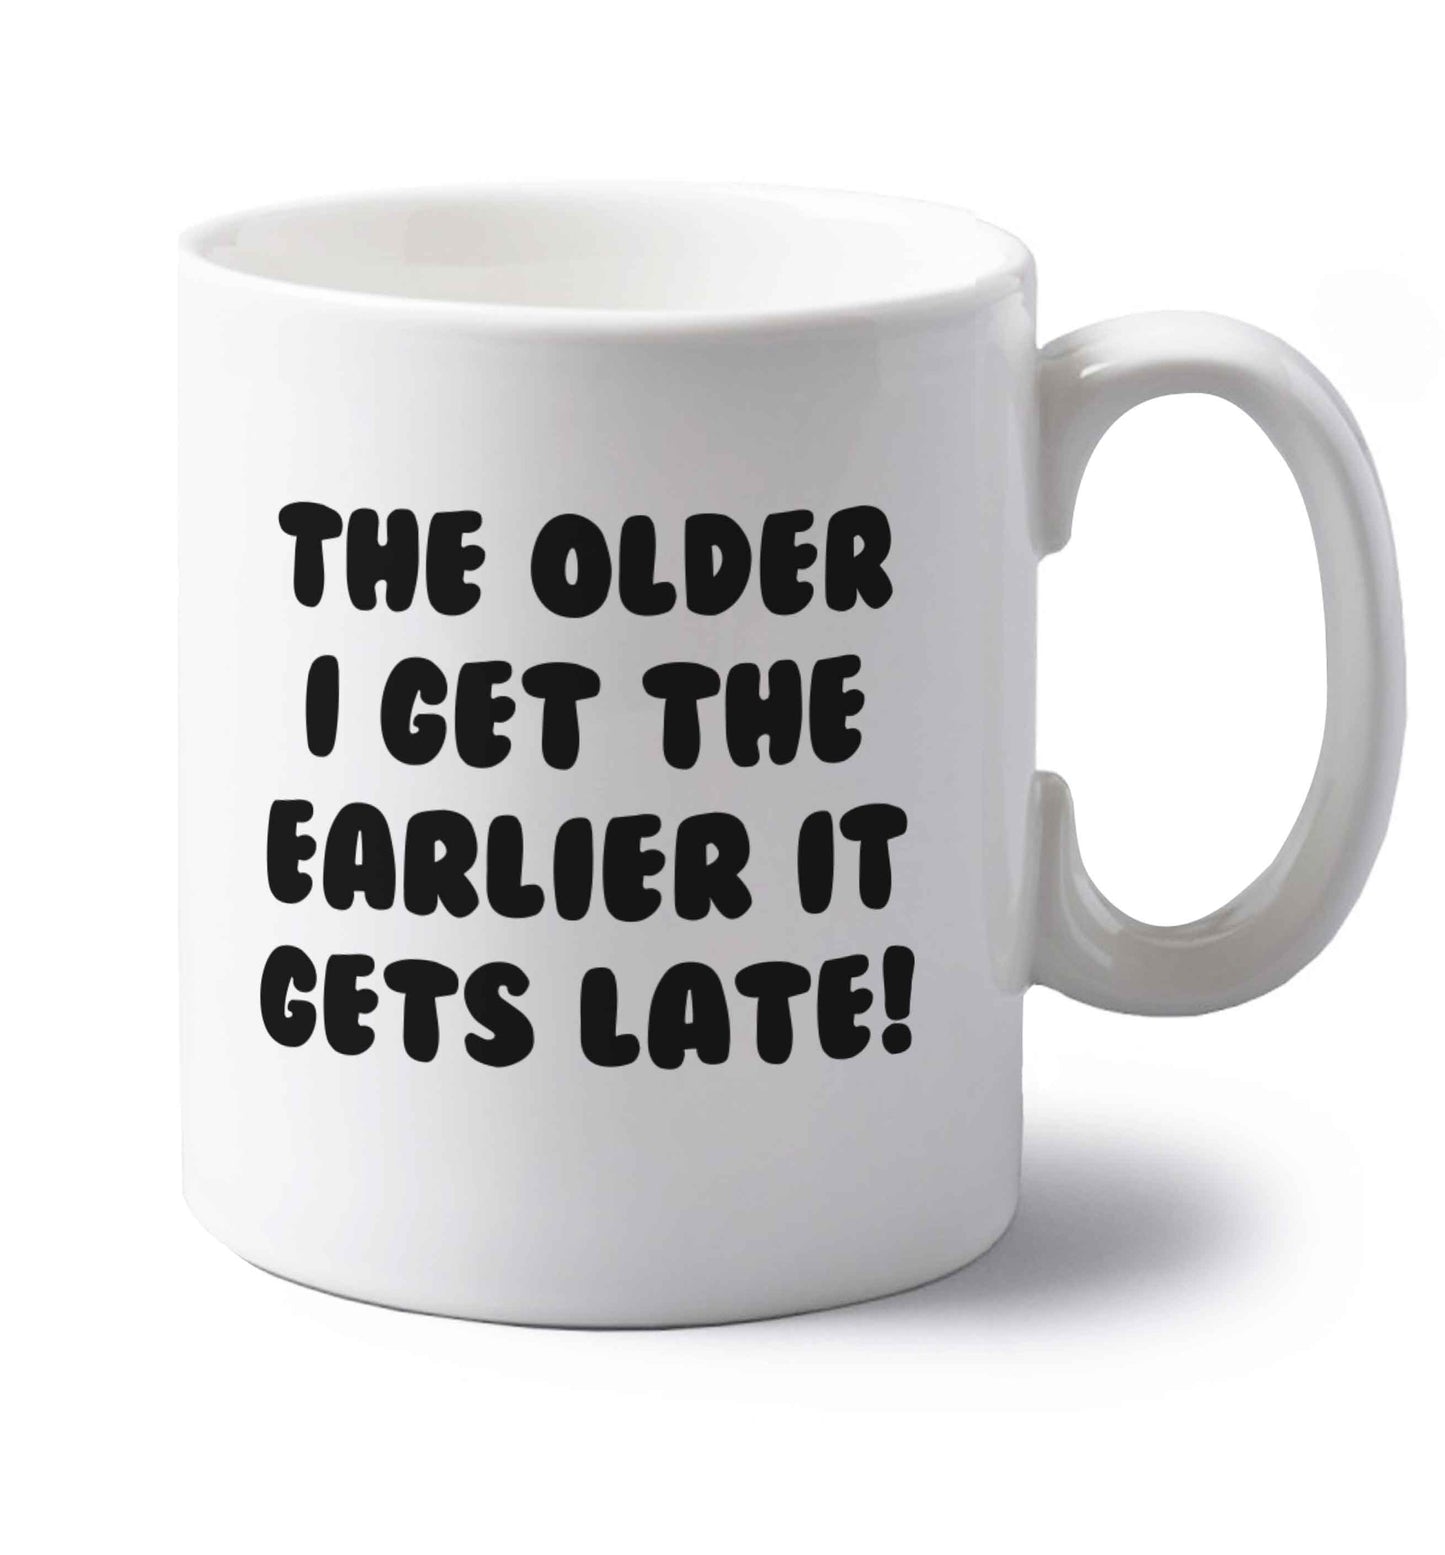 The older I get the earlier it gets late! left handed white ceramic mug 